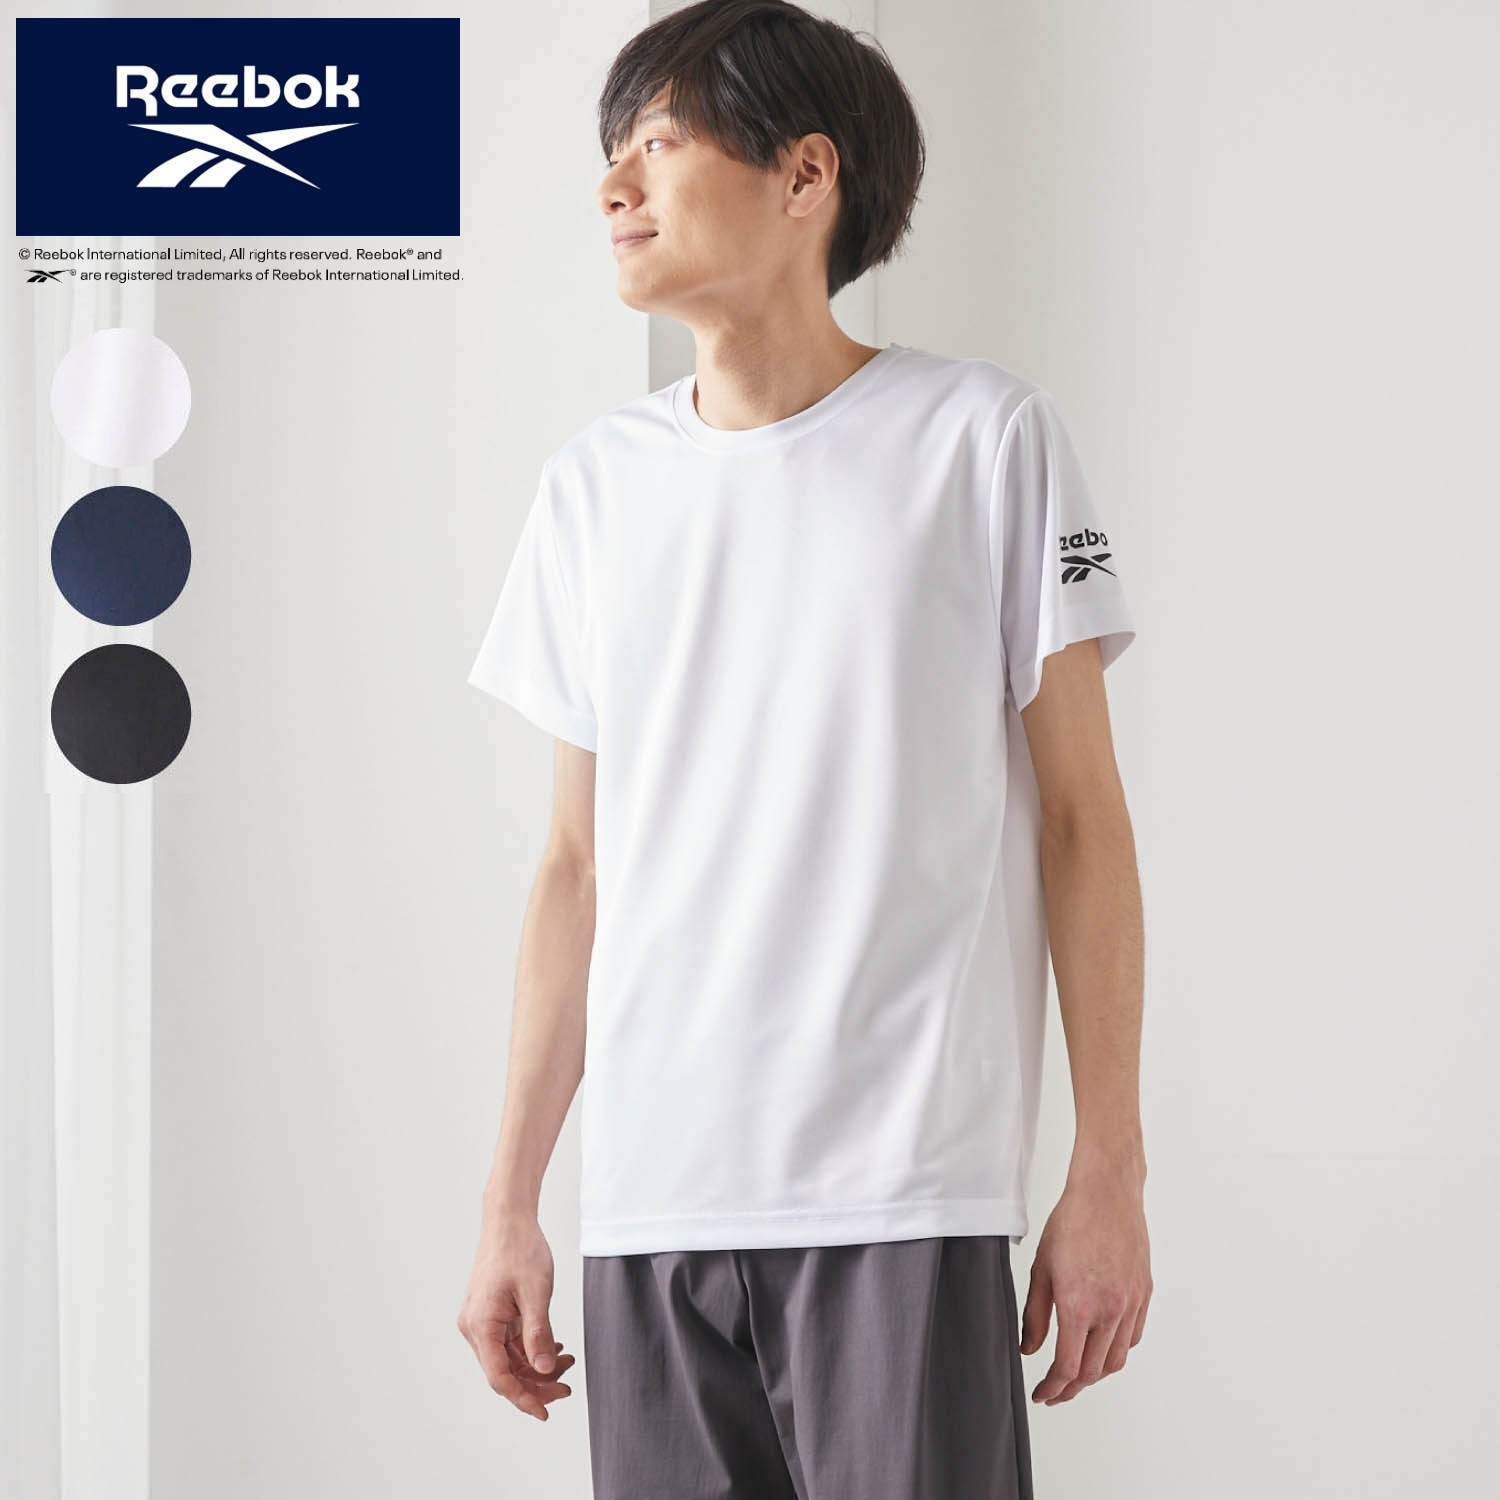 【リーボック/Reebok】【5月8日までまとめ買いでお得】 【メンズ】ハニカムメッシュ丸首Tシャツ